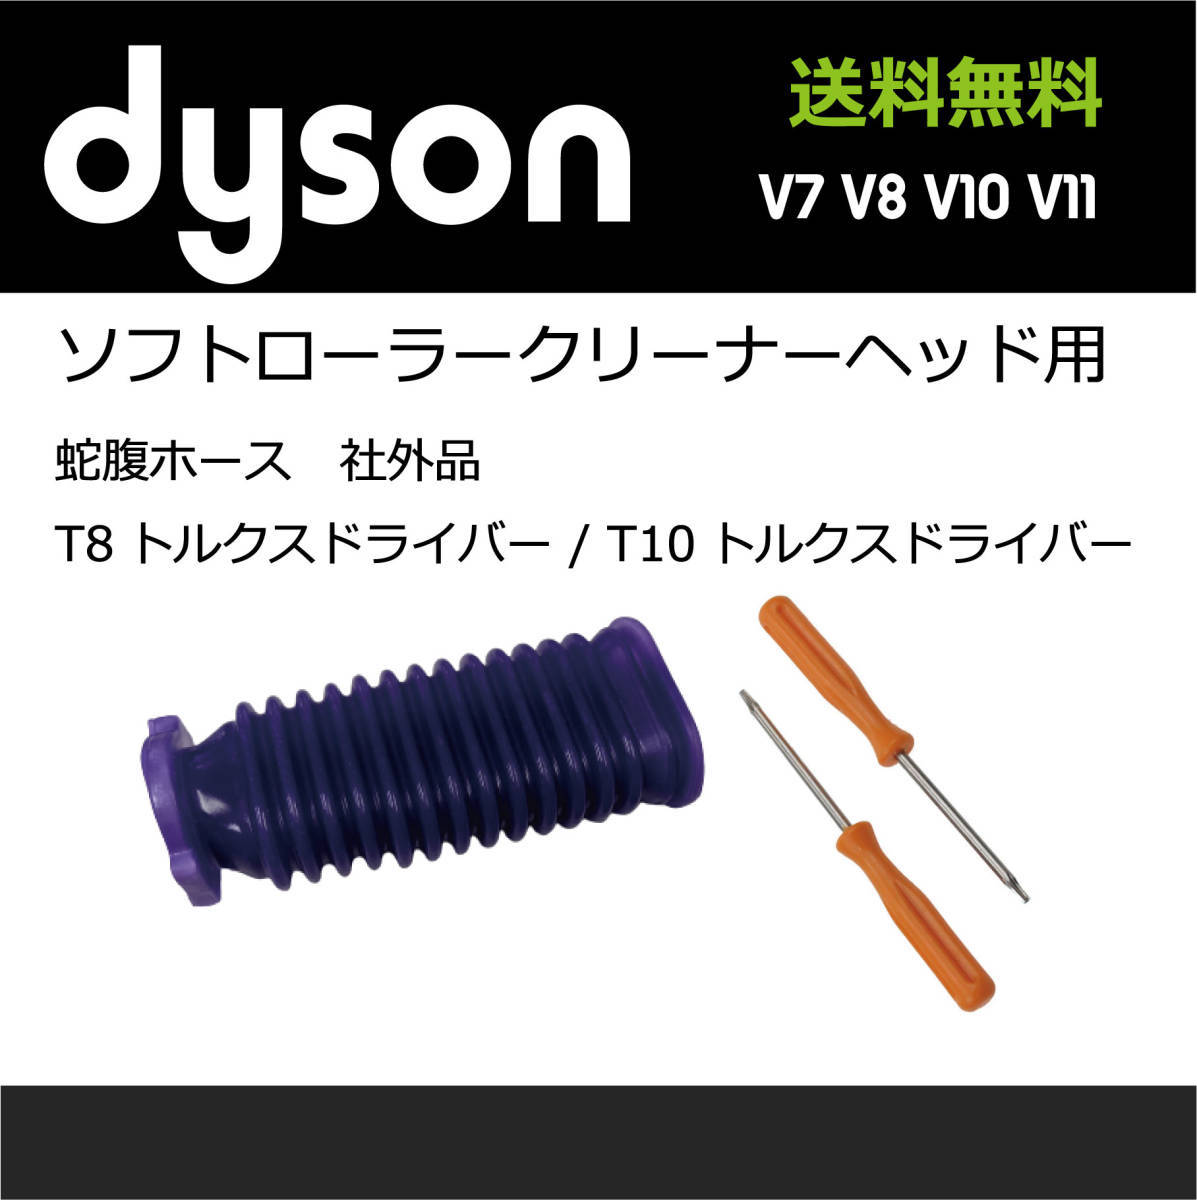 dysonソフトローラーヘッド用 互換品蛇腹ホース,T8トルクスドライバーセット